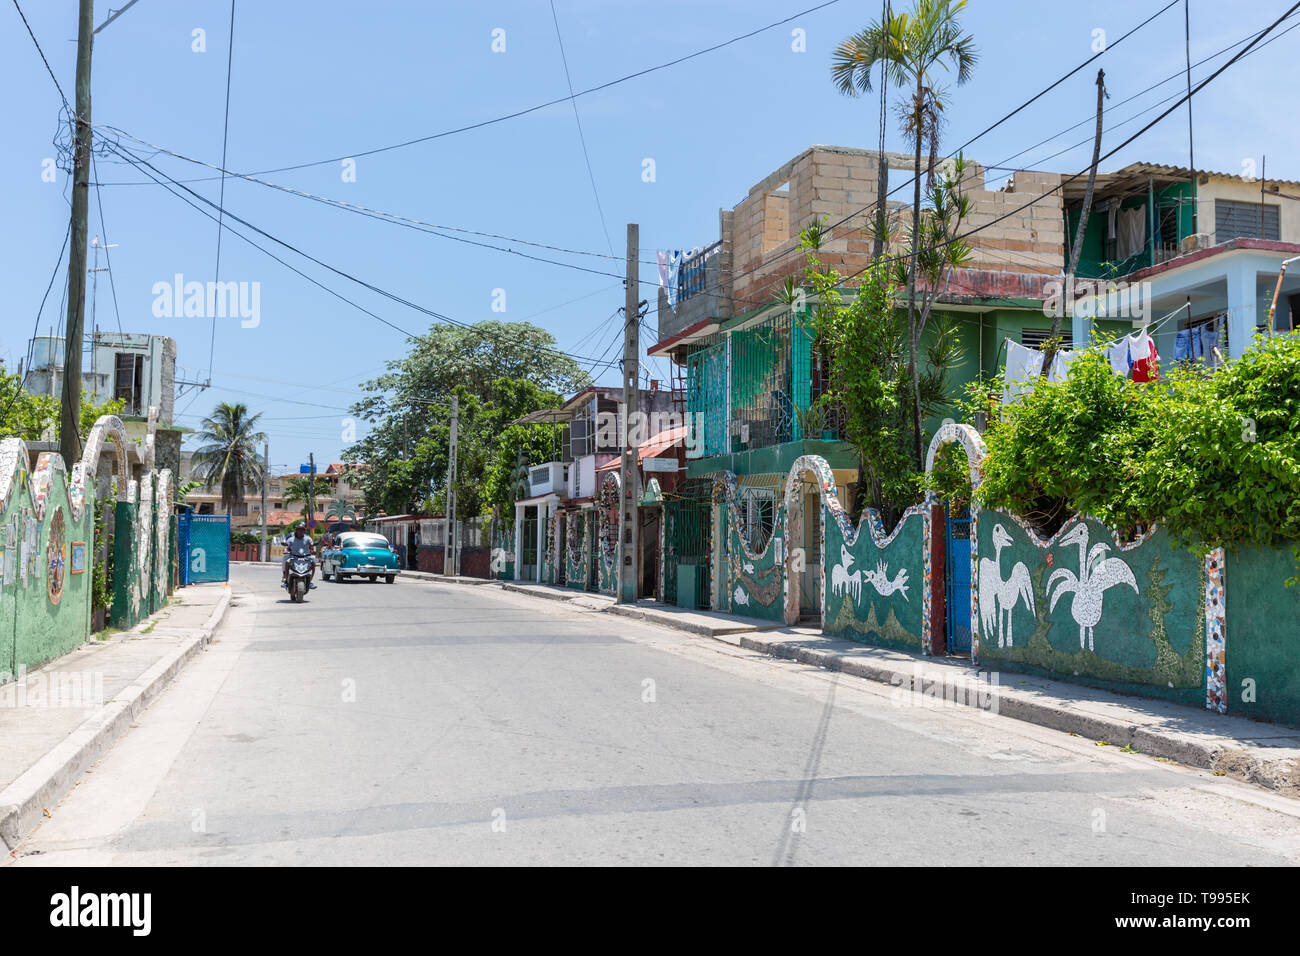 Dans la rue, La Havane Jaimanitas décoré de mosaïque art et sculptures dans le style Rodriguez Fuster, Cuba Banque D'Images